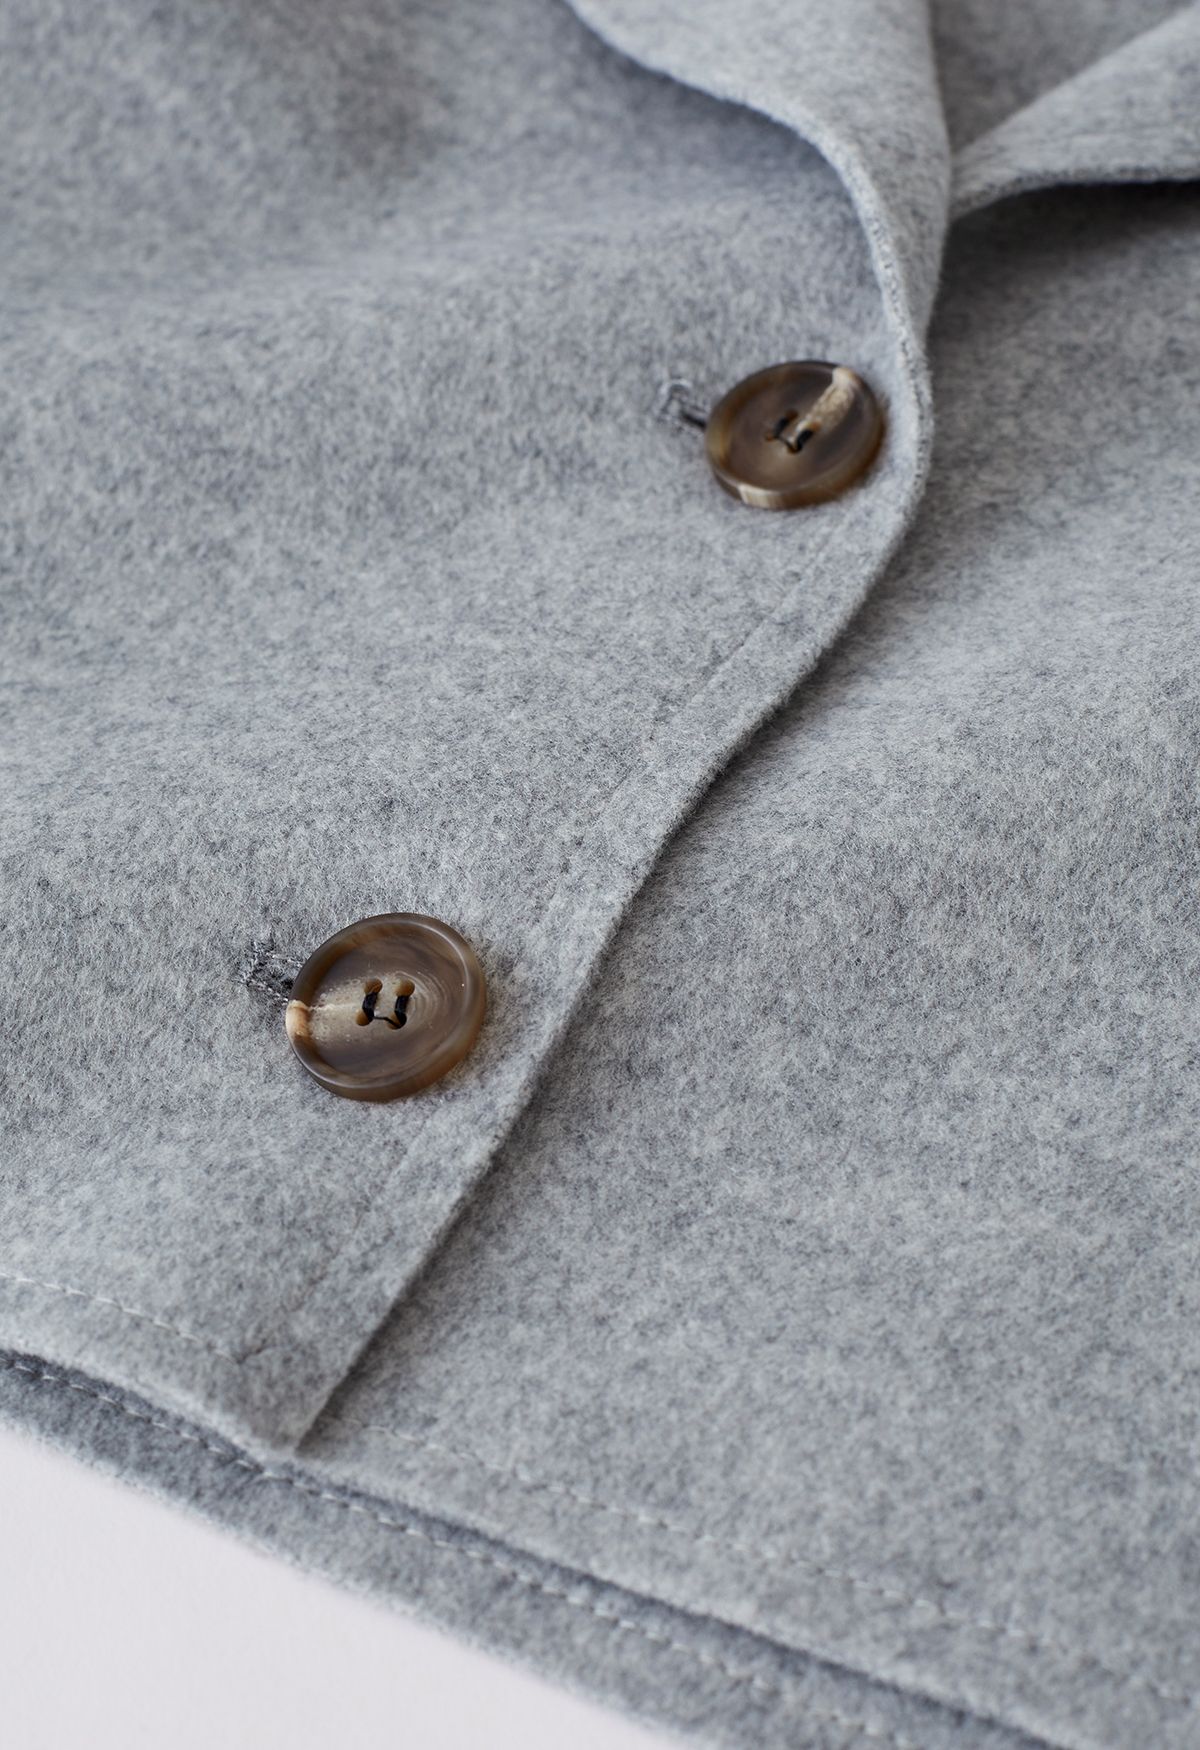 Blazer corto in misto lana e gilet con cintura in grigio